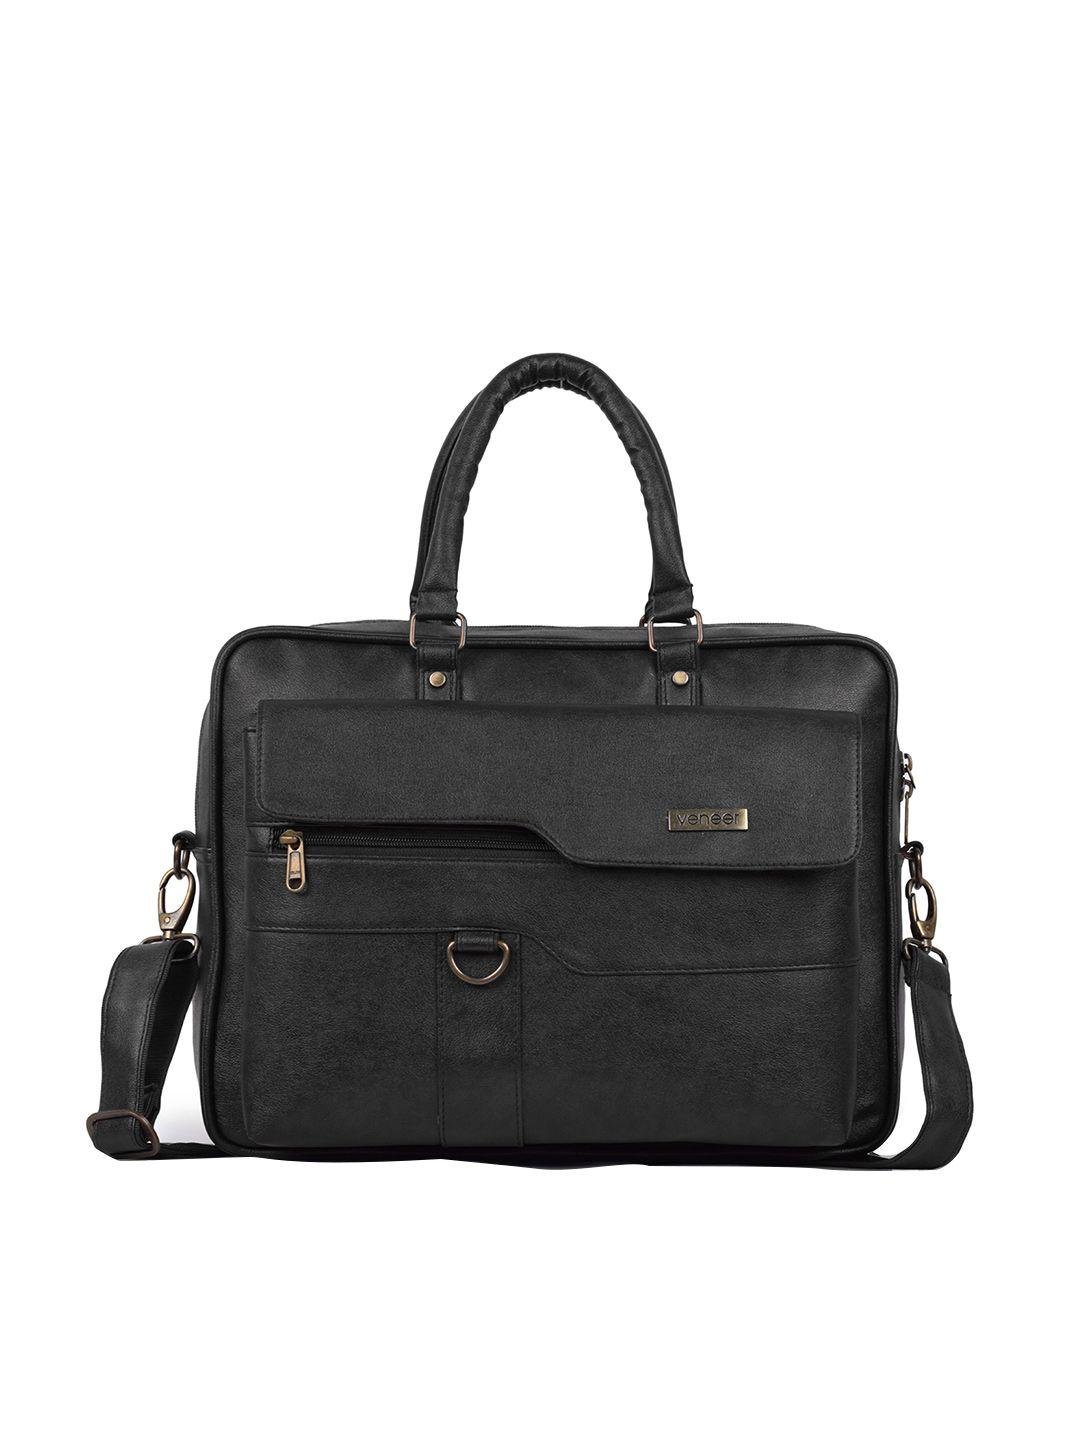 veneer unisex black laptop bag